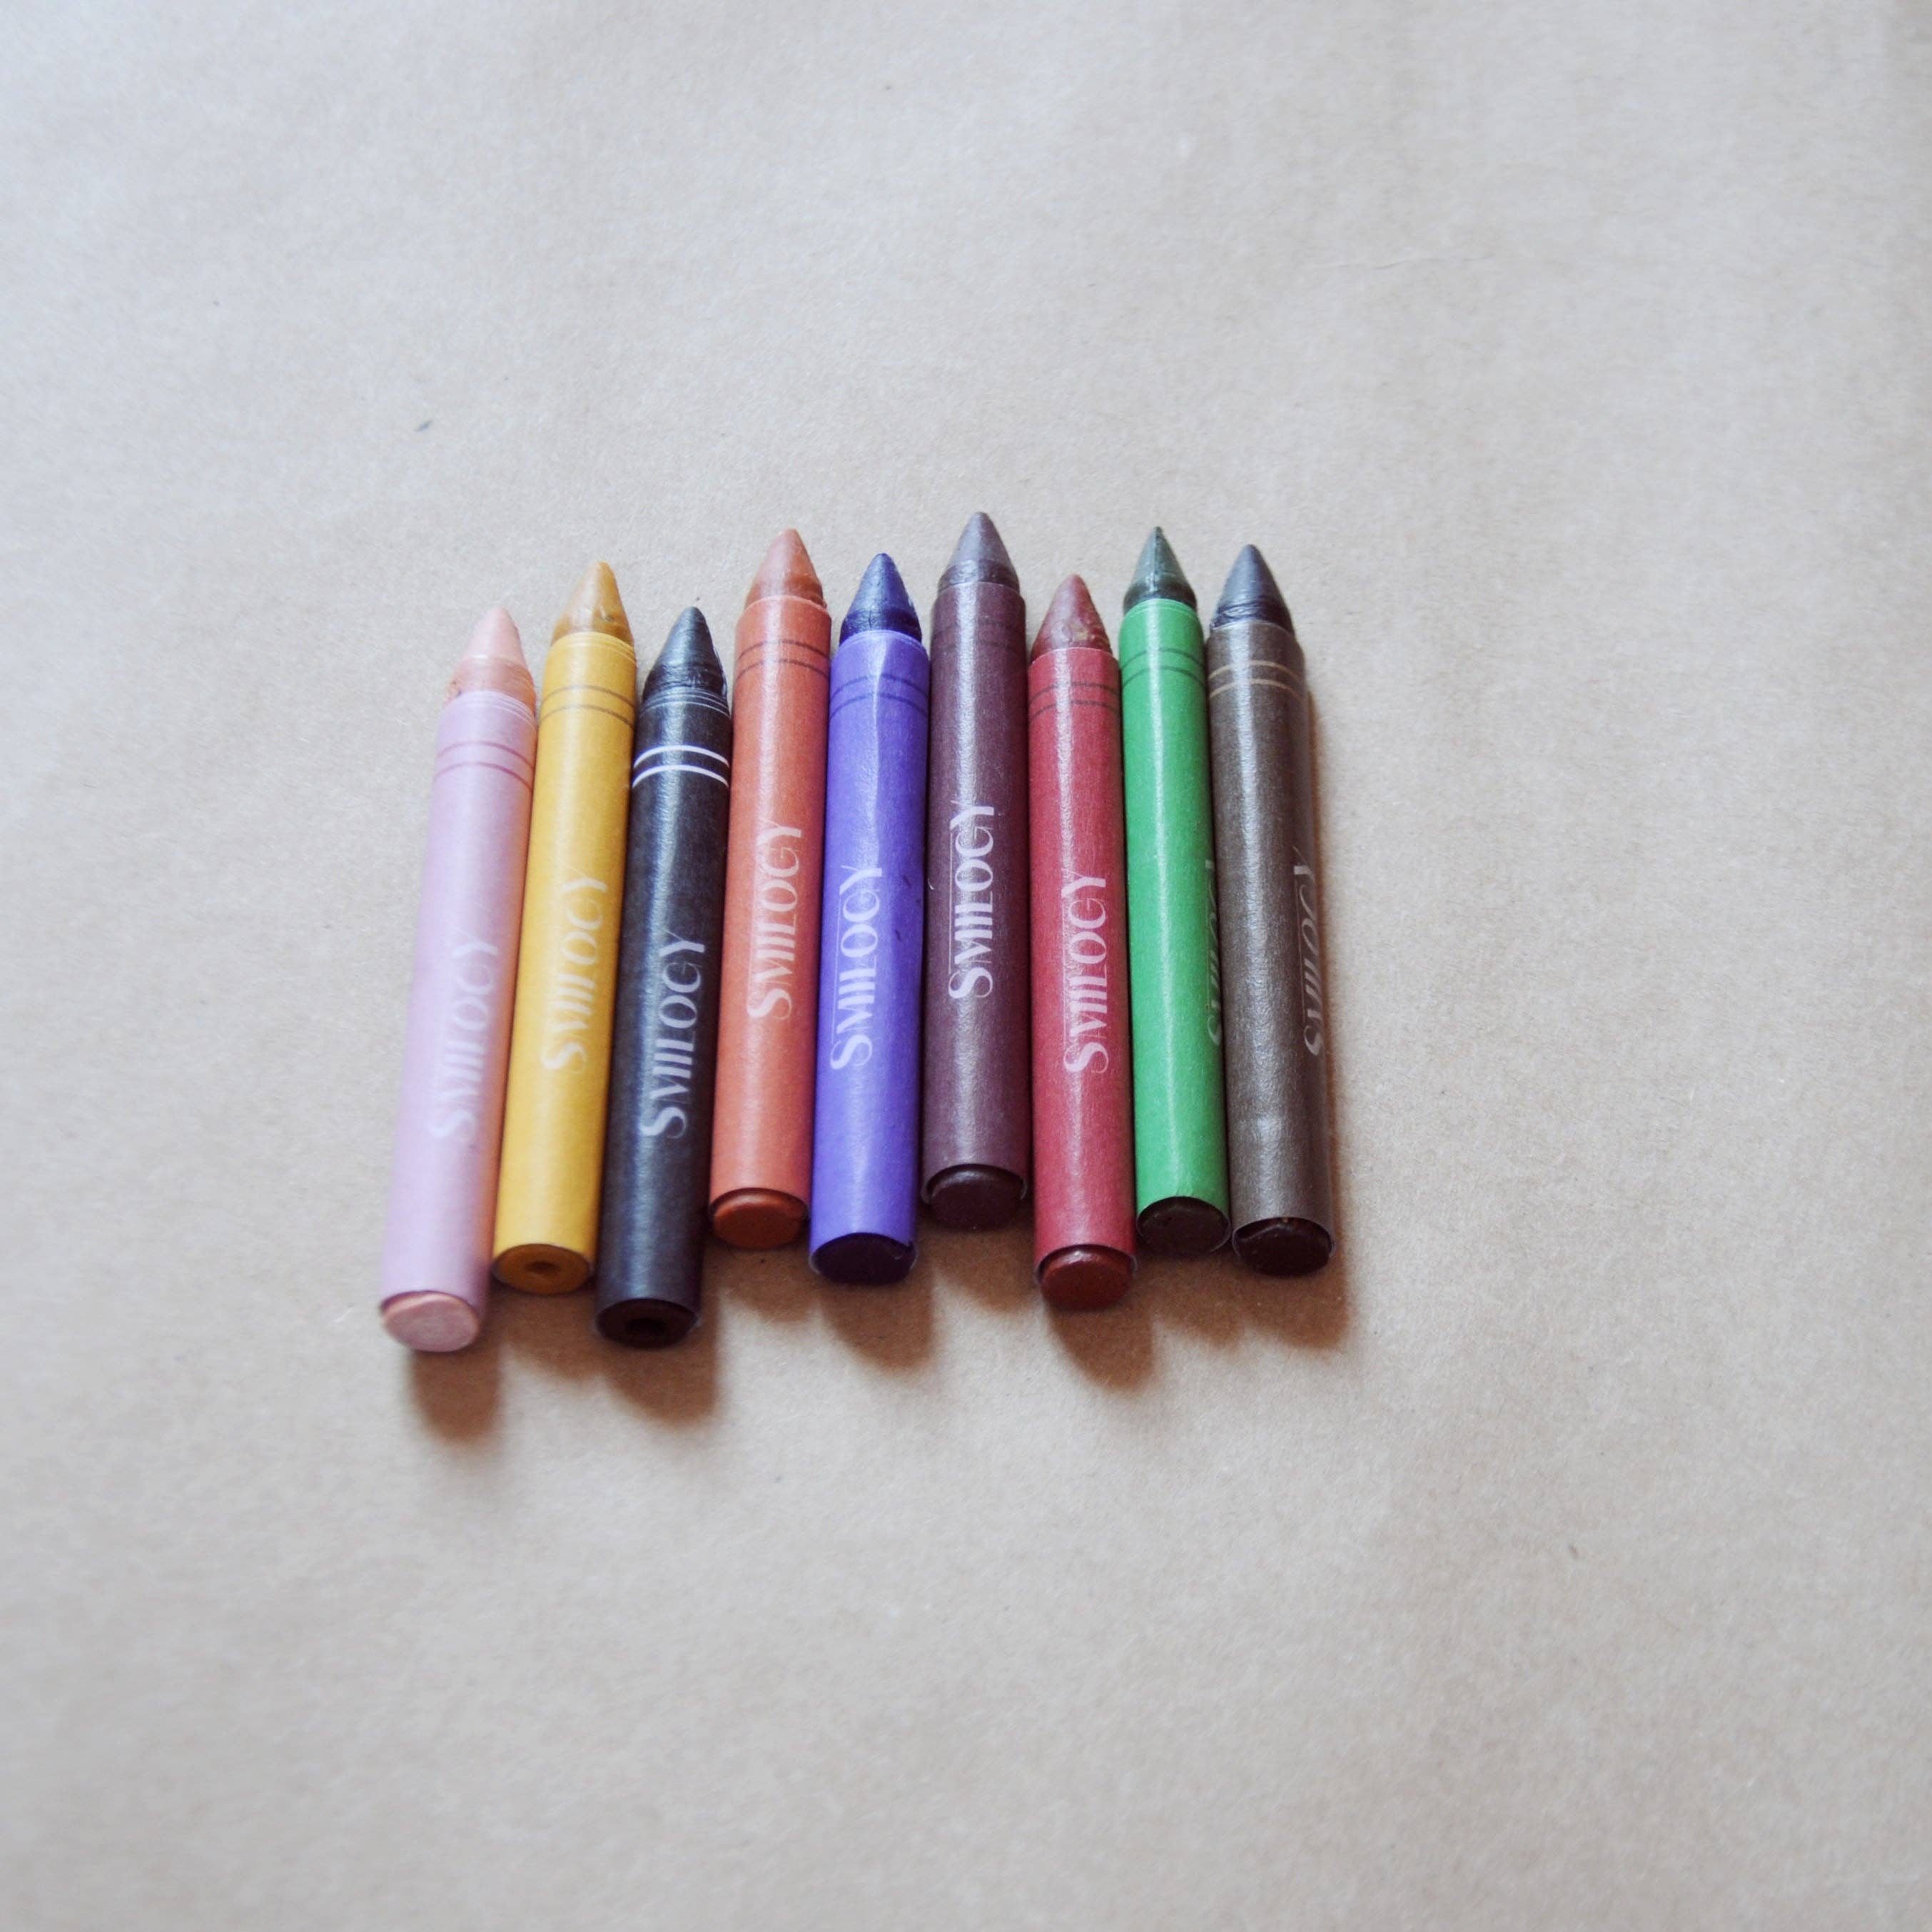 6-Piece Non-Toxic & Handmade Organic Beeswax Toddler Crayon Fingers –  Smilogy Organic Beeswax Crayons